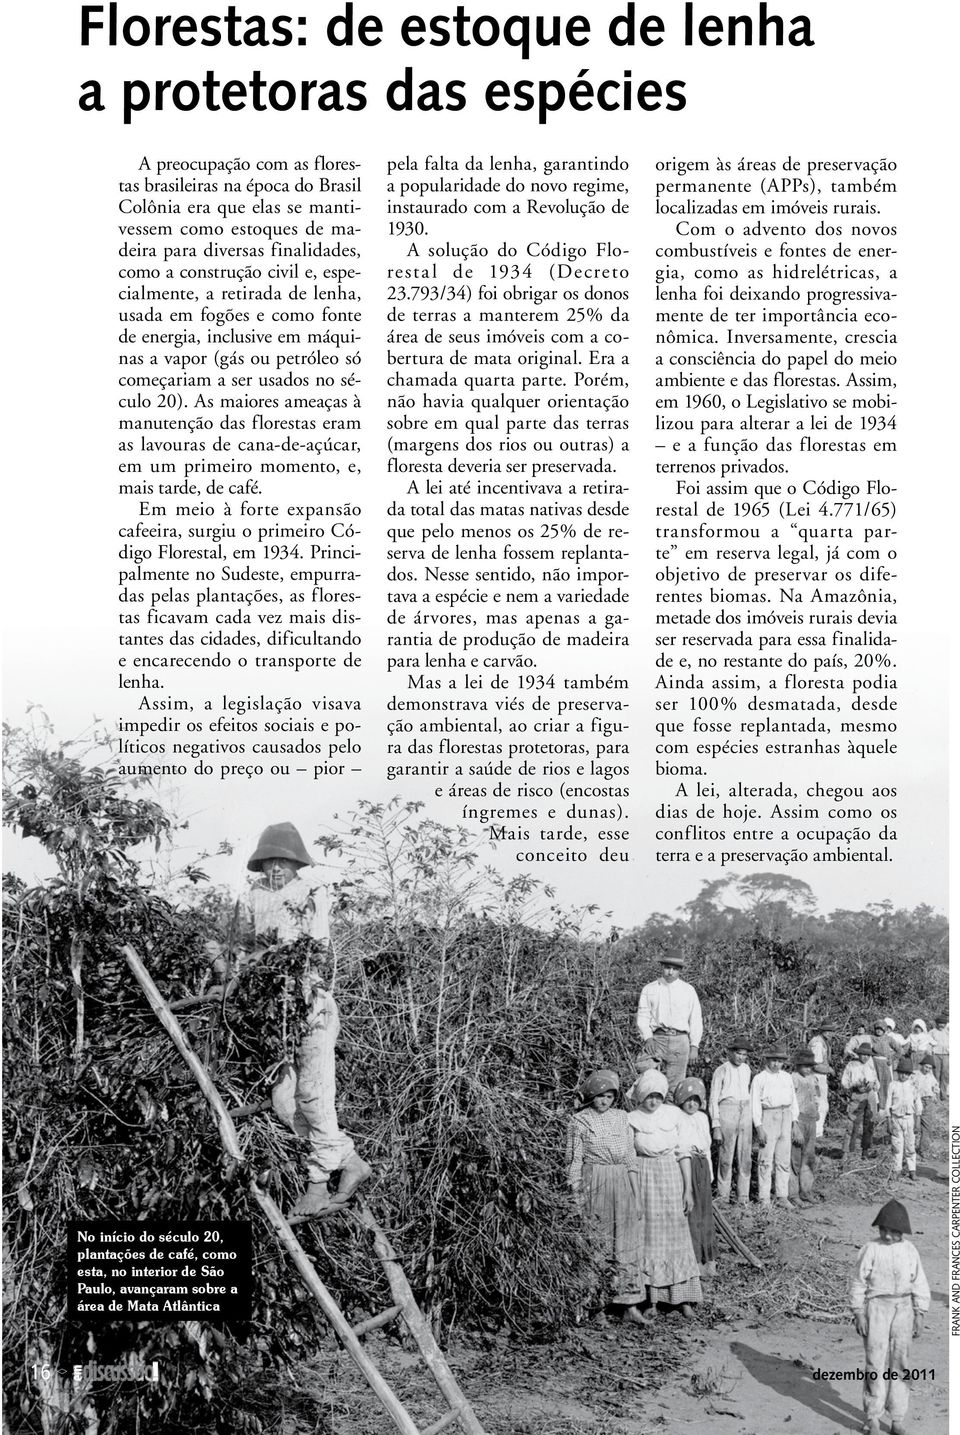 século 20). As maiores ameaças à manutenção das florestas eram as lavouras de cana-de-açúcar, em um primeiro momento, e, mais tarde, de café.